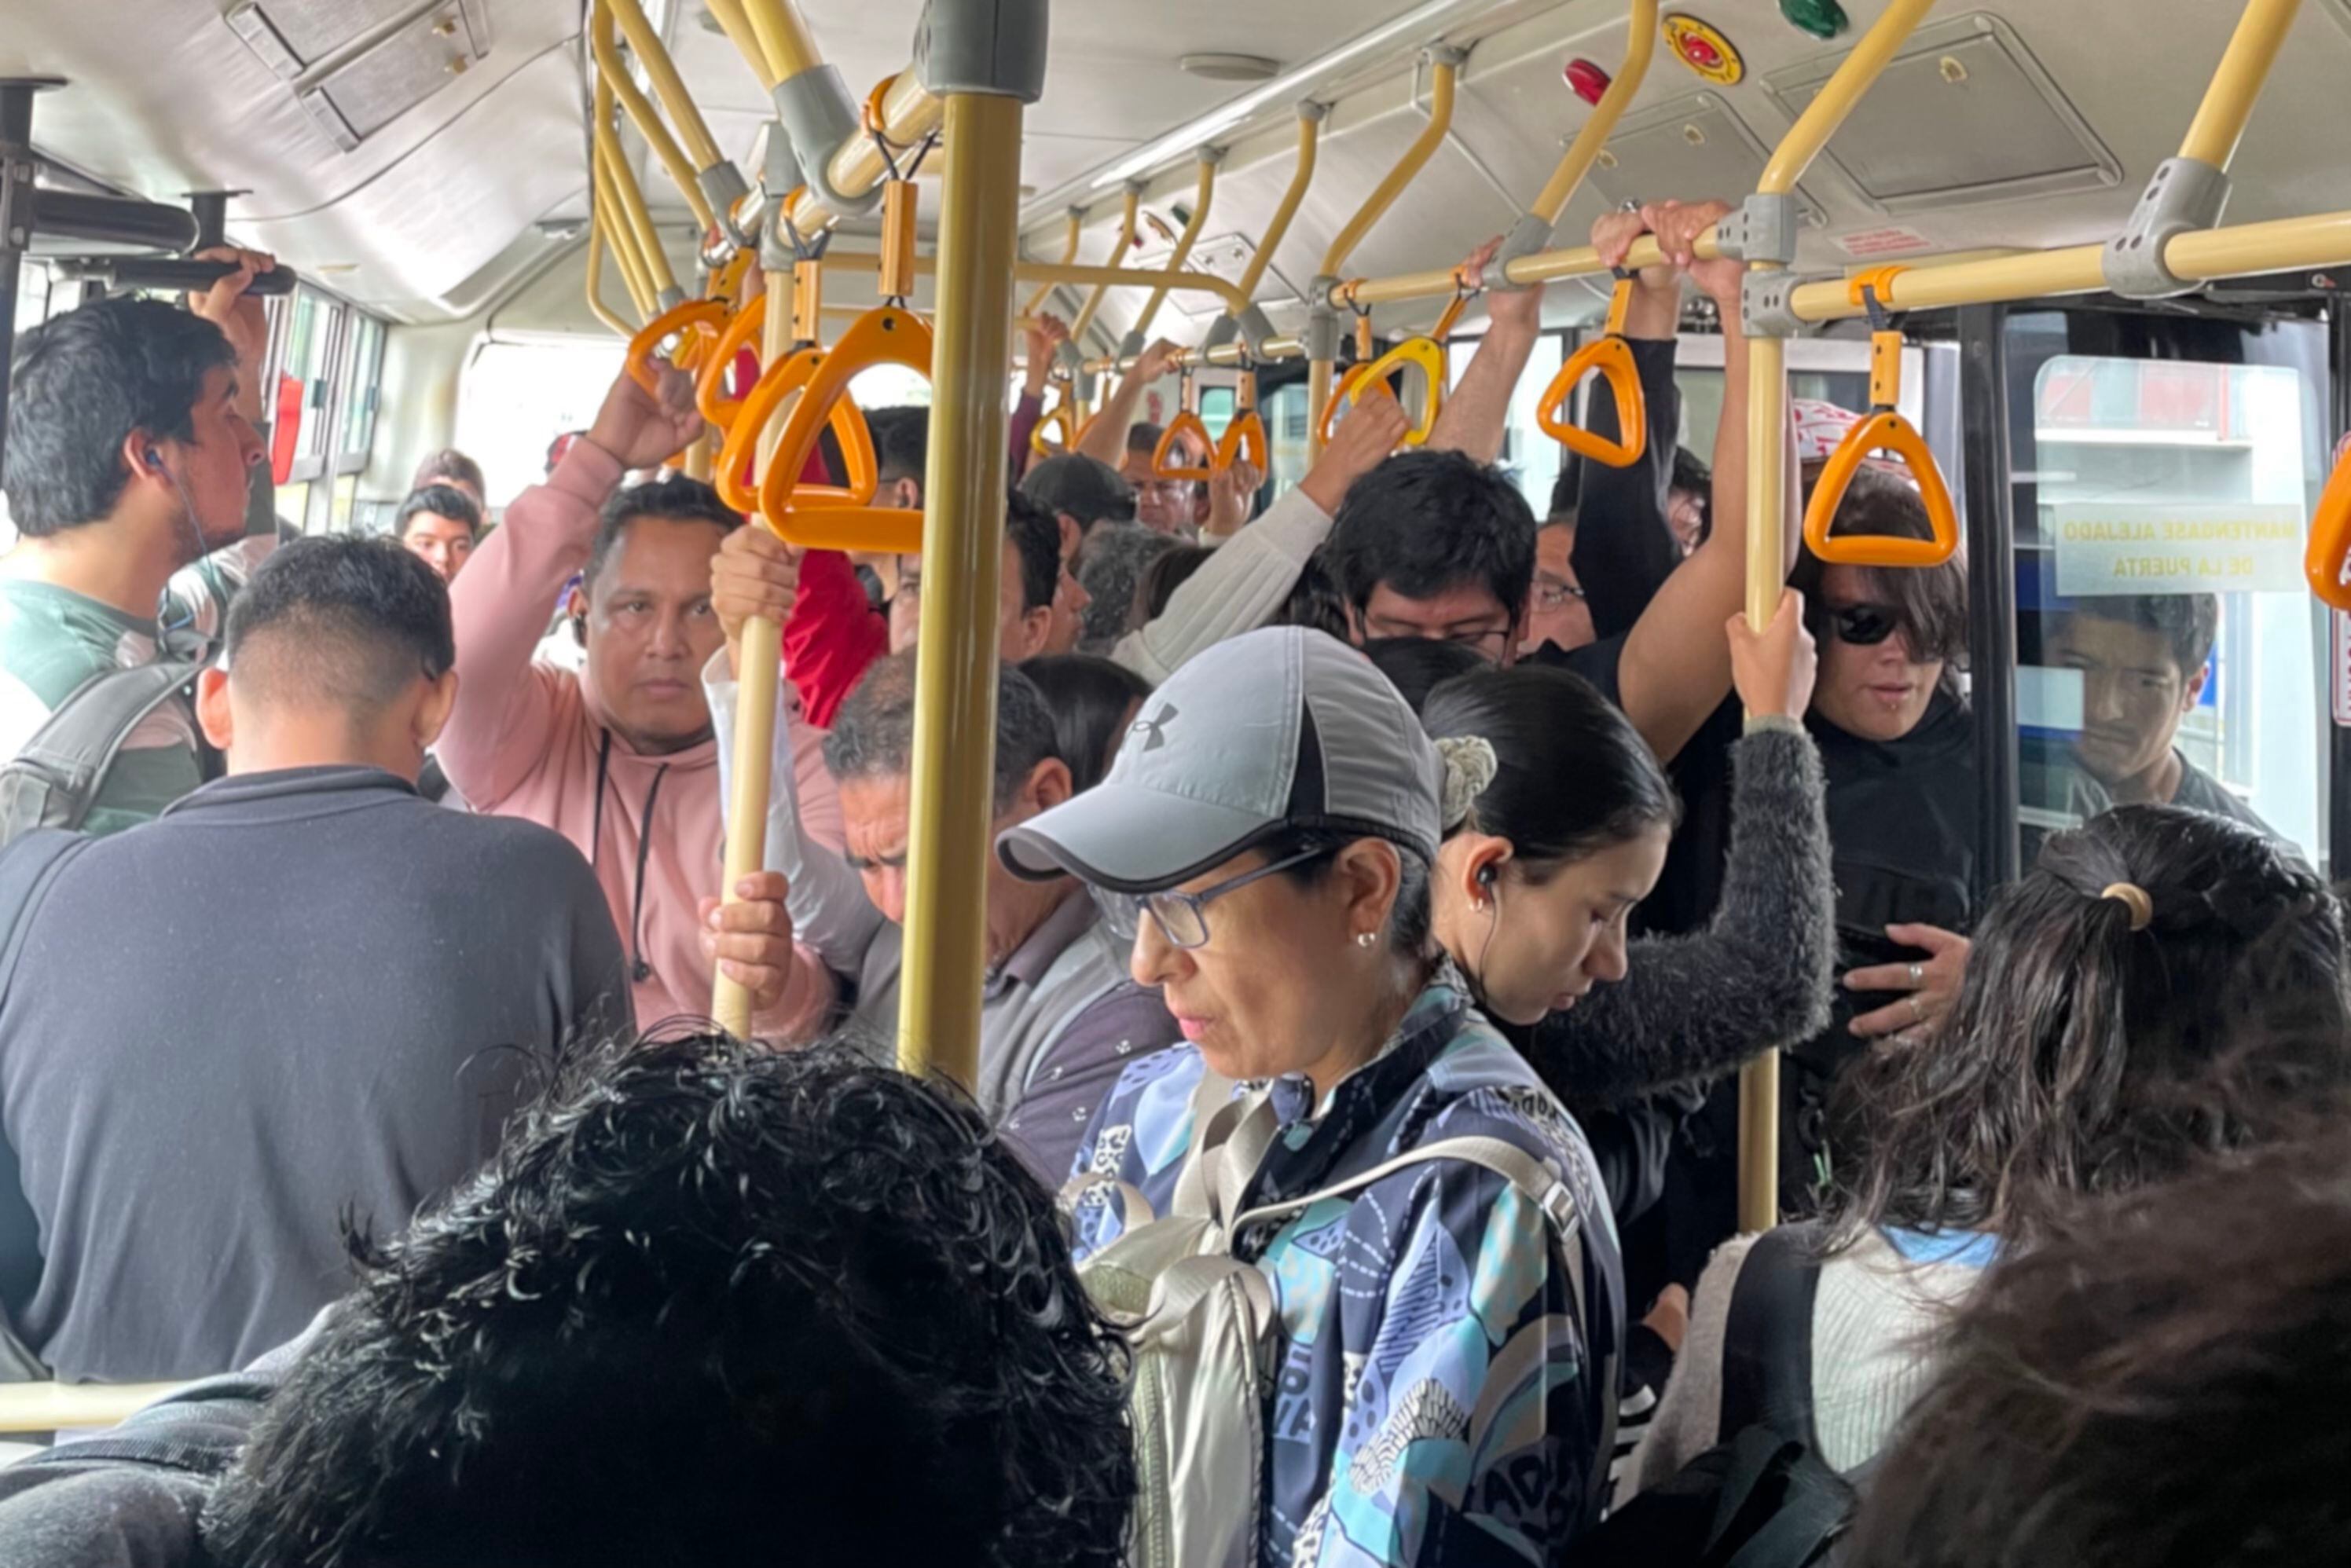 Luego de la división por colas, adentro de los buses los usuarios varones y mujeres se mezclan.